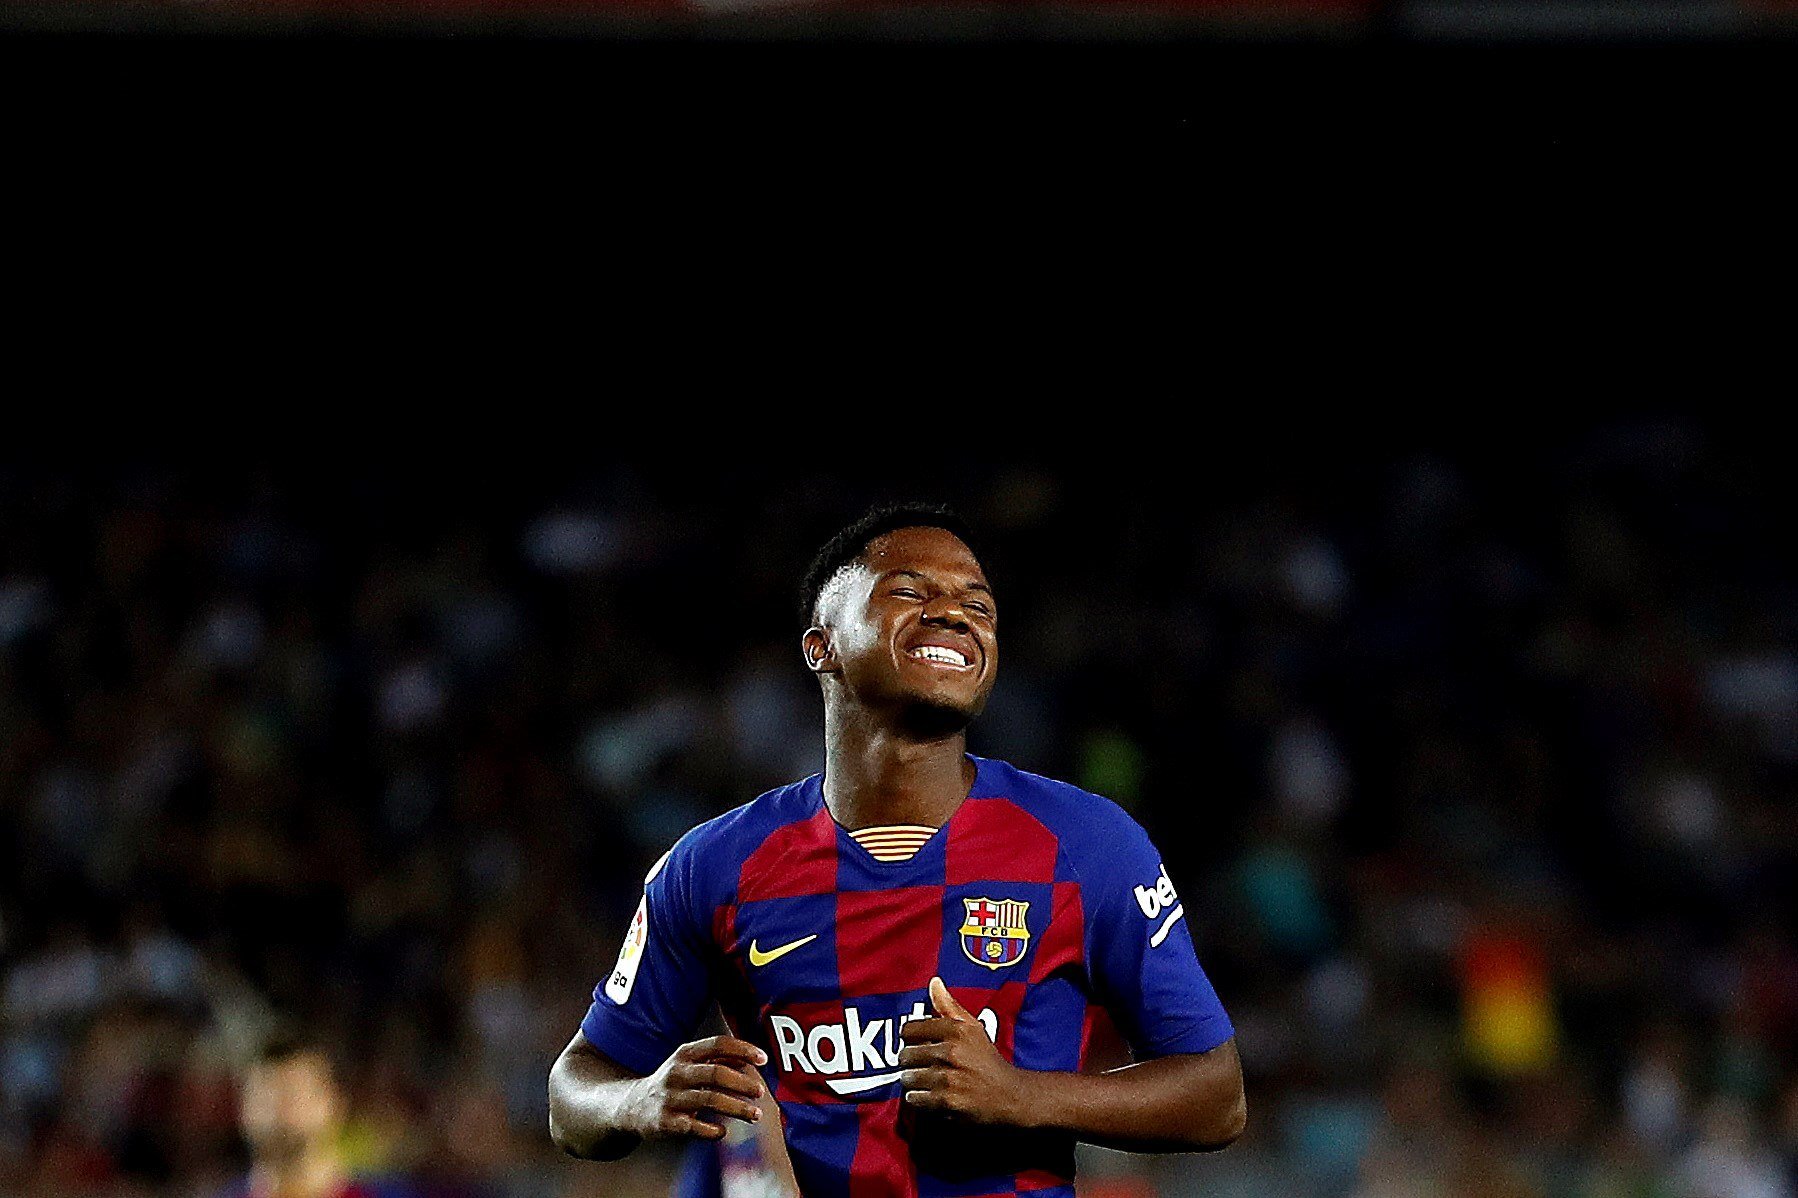 Temps al temps: Ansu Fati encara no és Messi